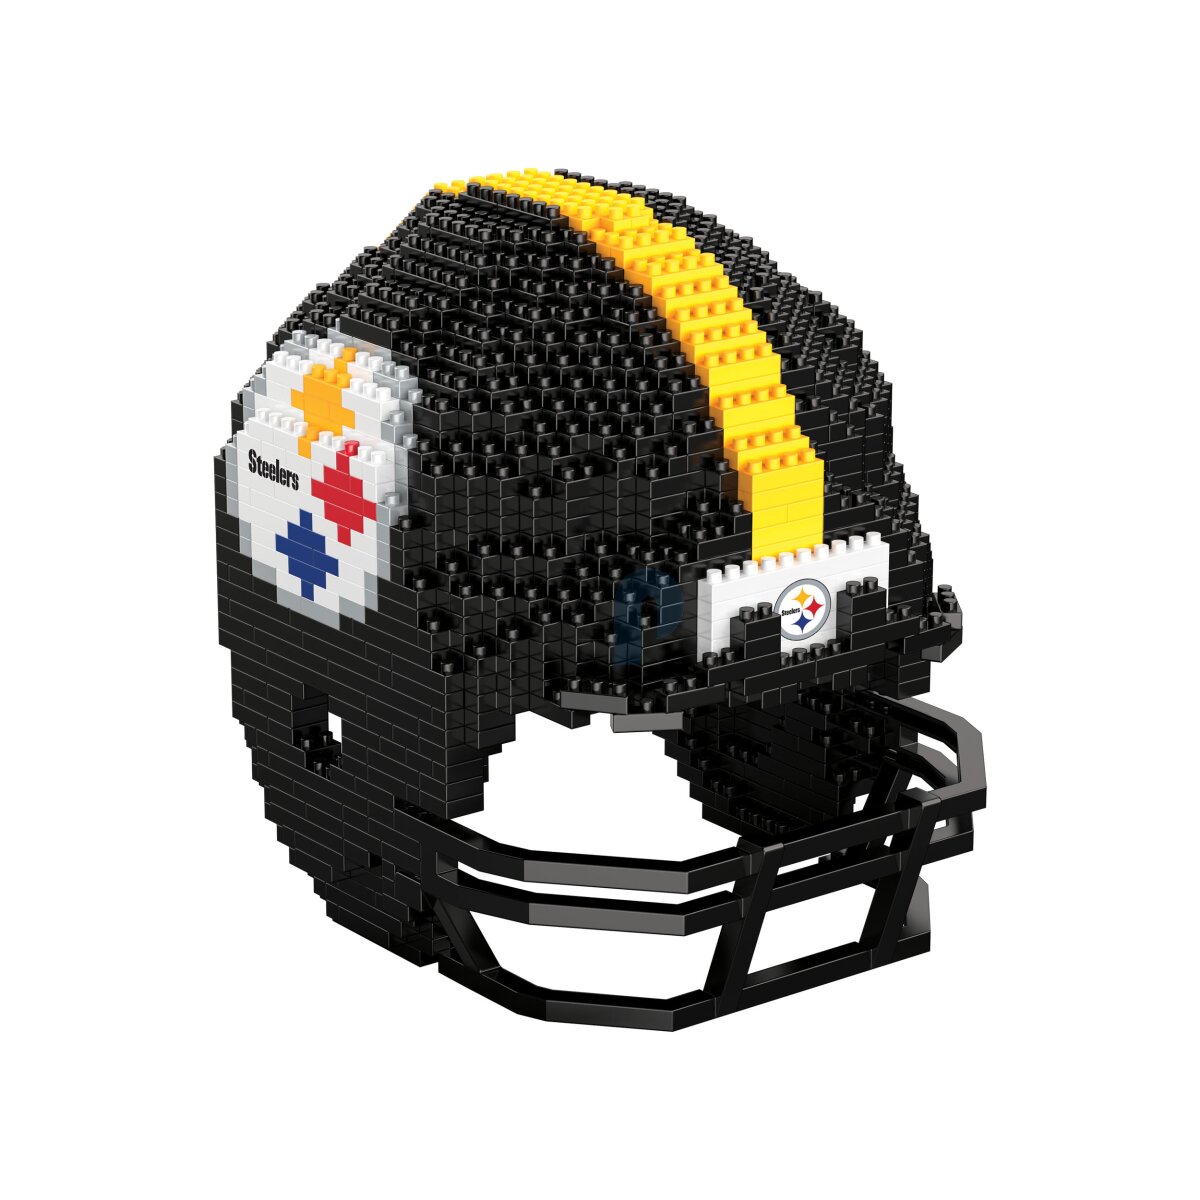 pittsburgh steelers football helmet